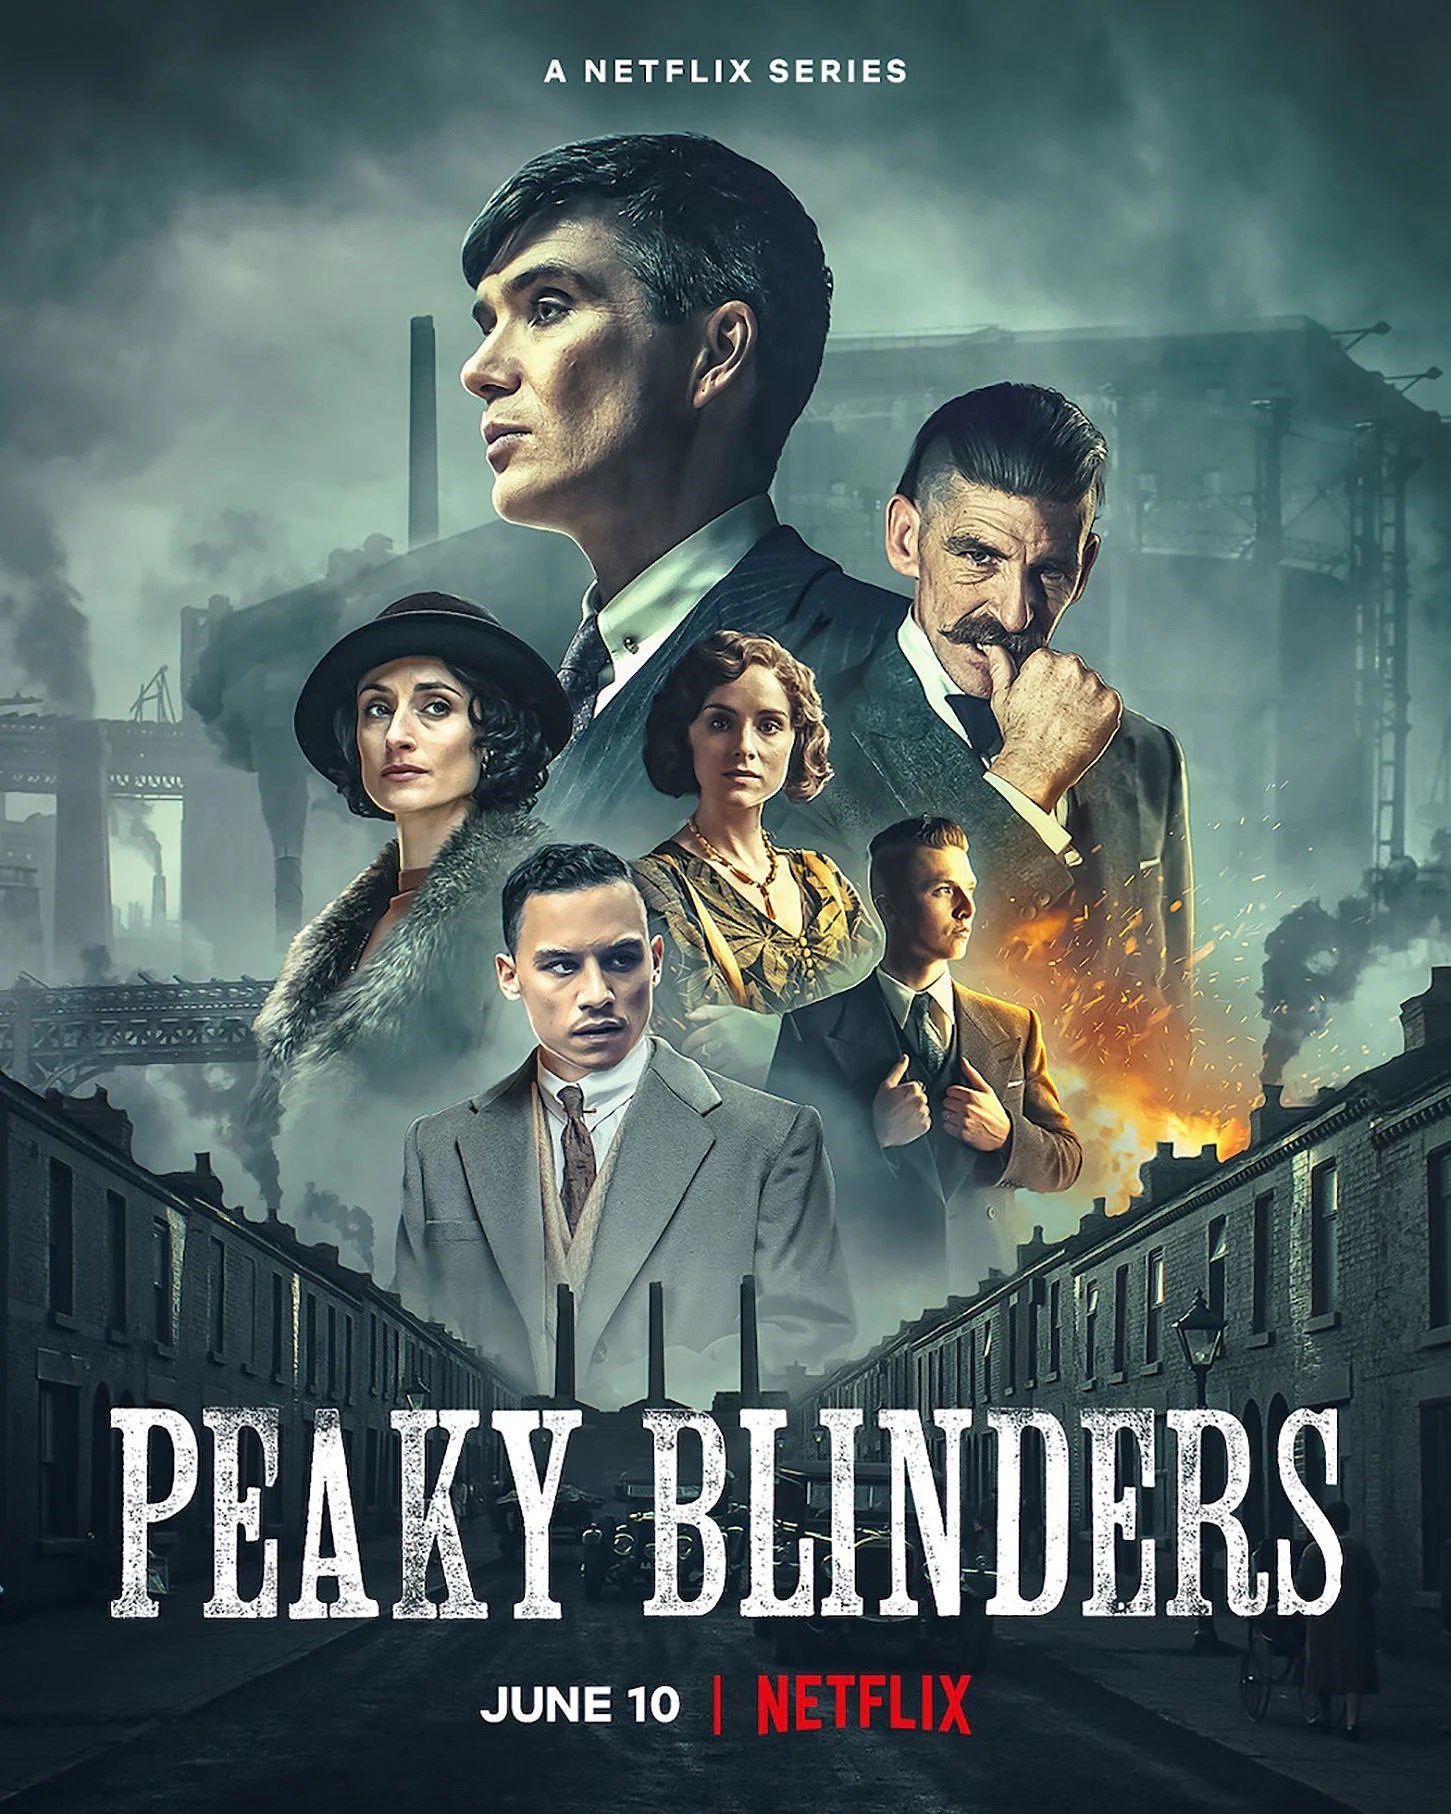 ödüllü polisiye dizi Peaky Blinders 